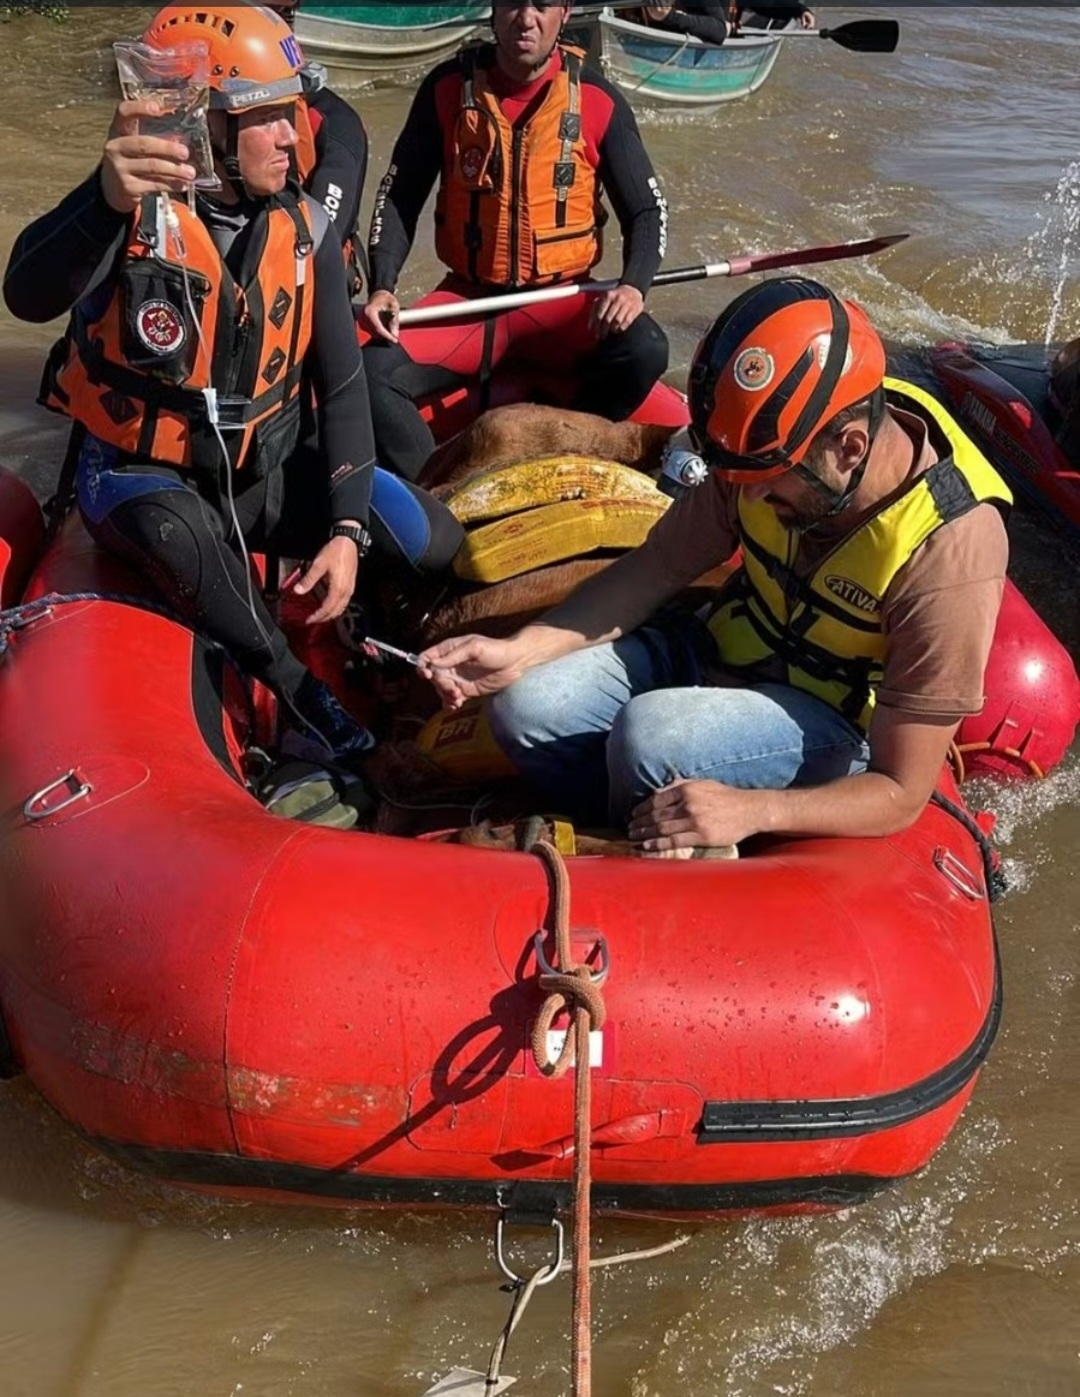 Já sedado, ele foi levado de bote. A operação envolveu três botes com equipe acompanhando o percurso em meio à inundação. Reprodução: Flipar